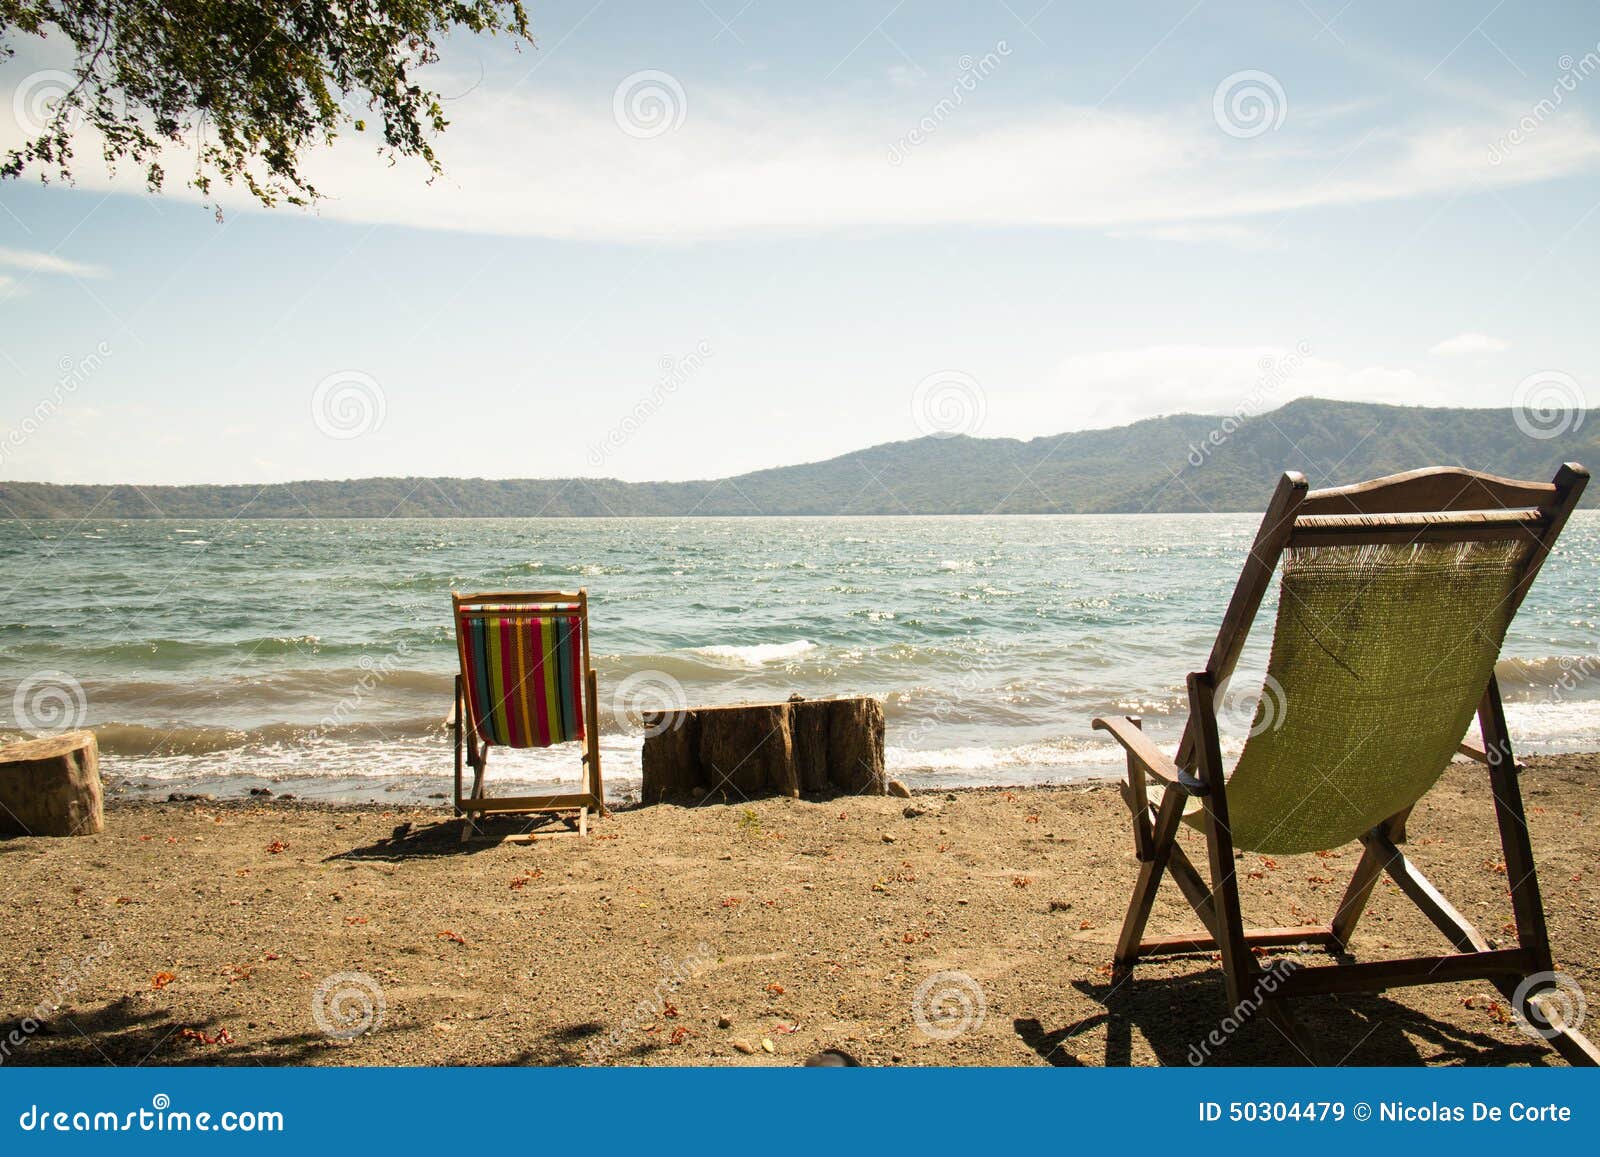 chairs at the shore of lake apoyo near granada, nicaragua